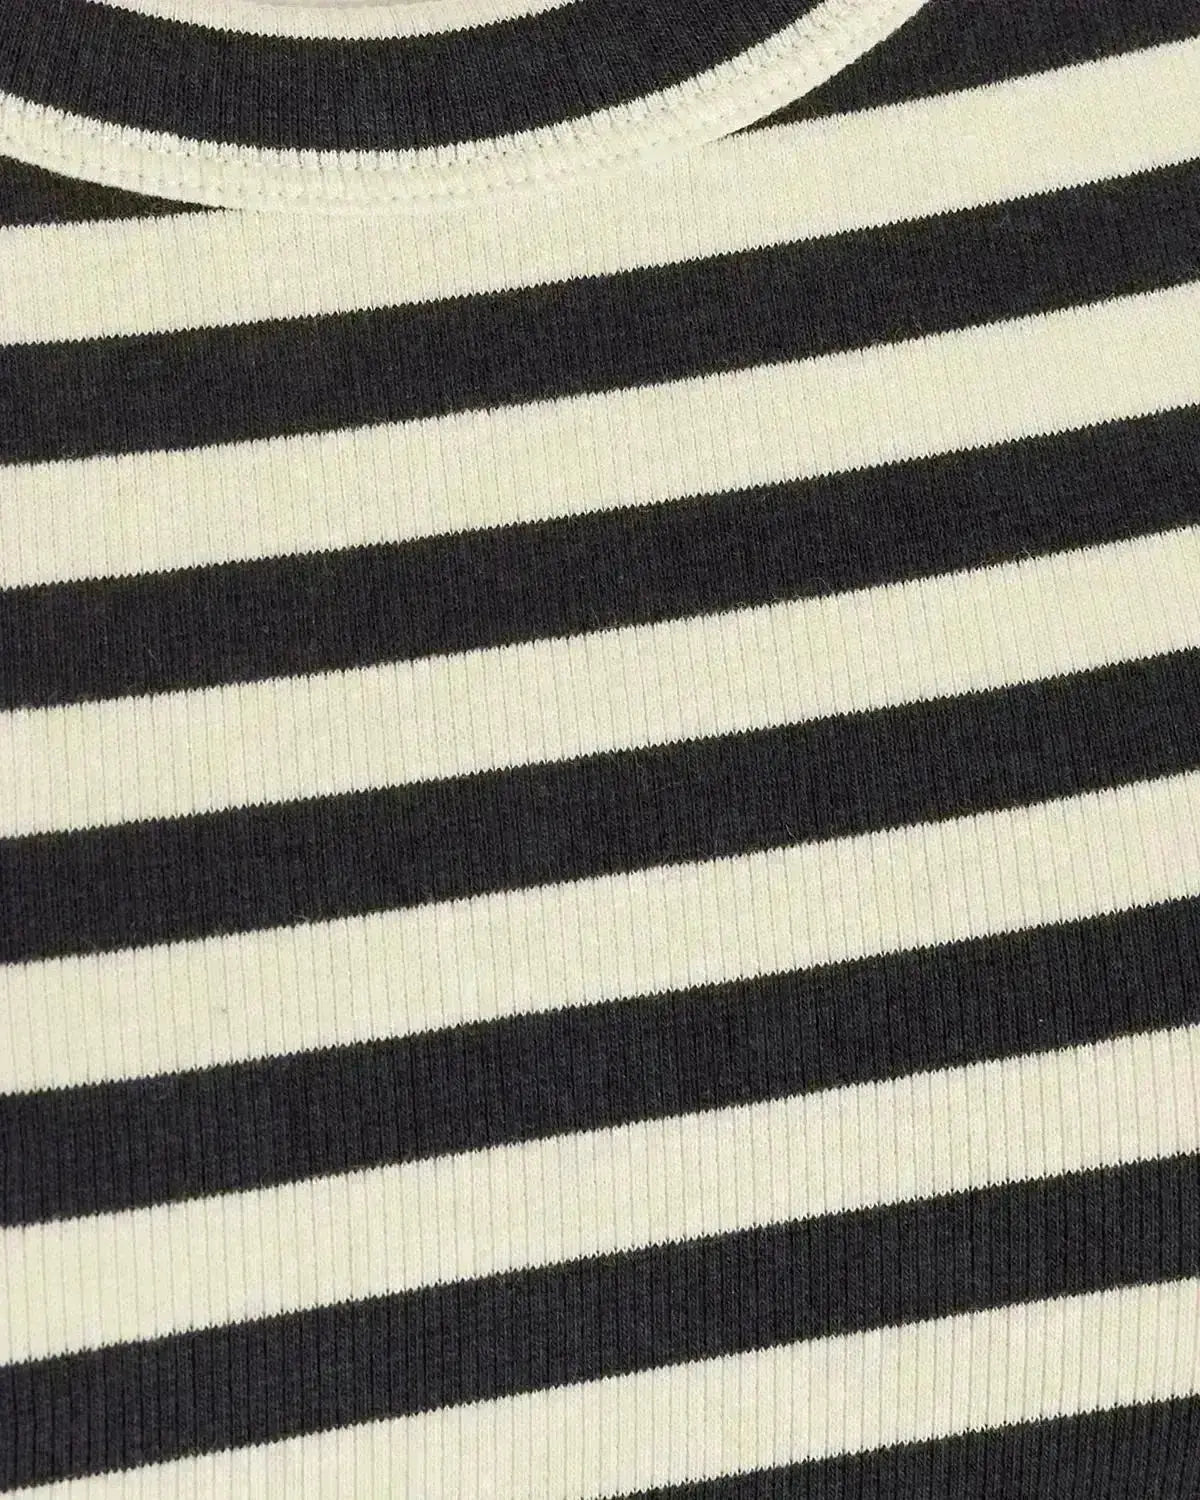 Sofie Schnoor T-Shirt-Kleid Streifen - KNOCKNOK Fashion